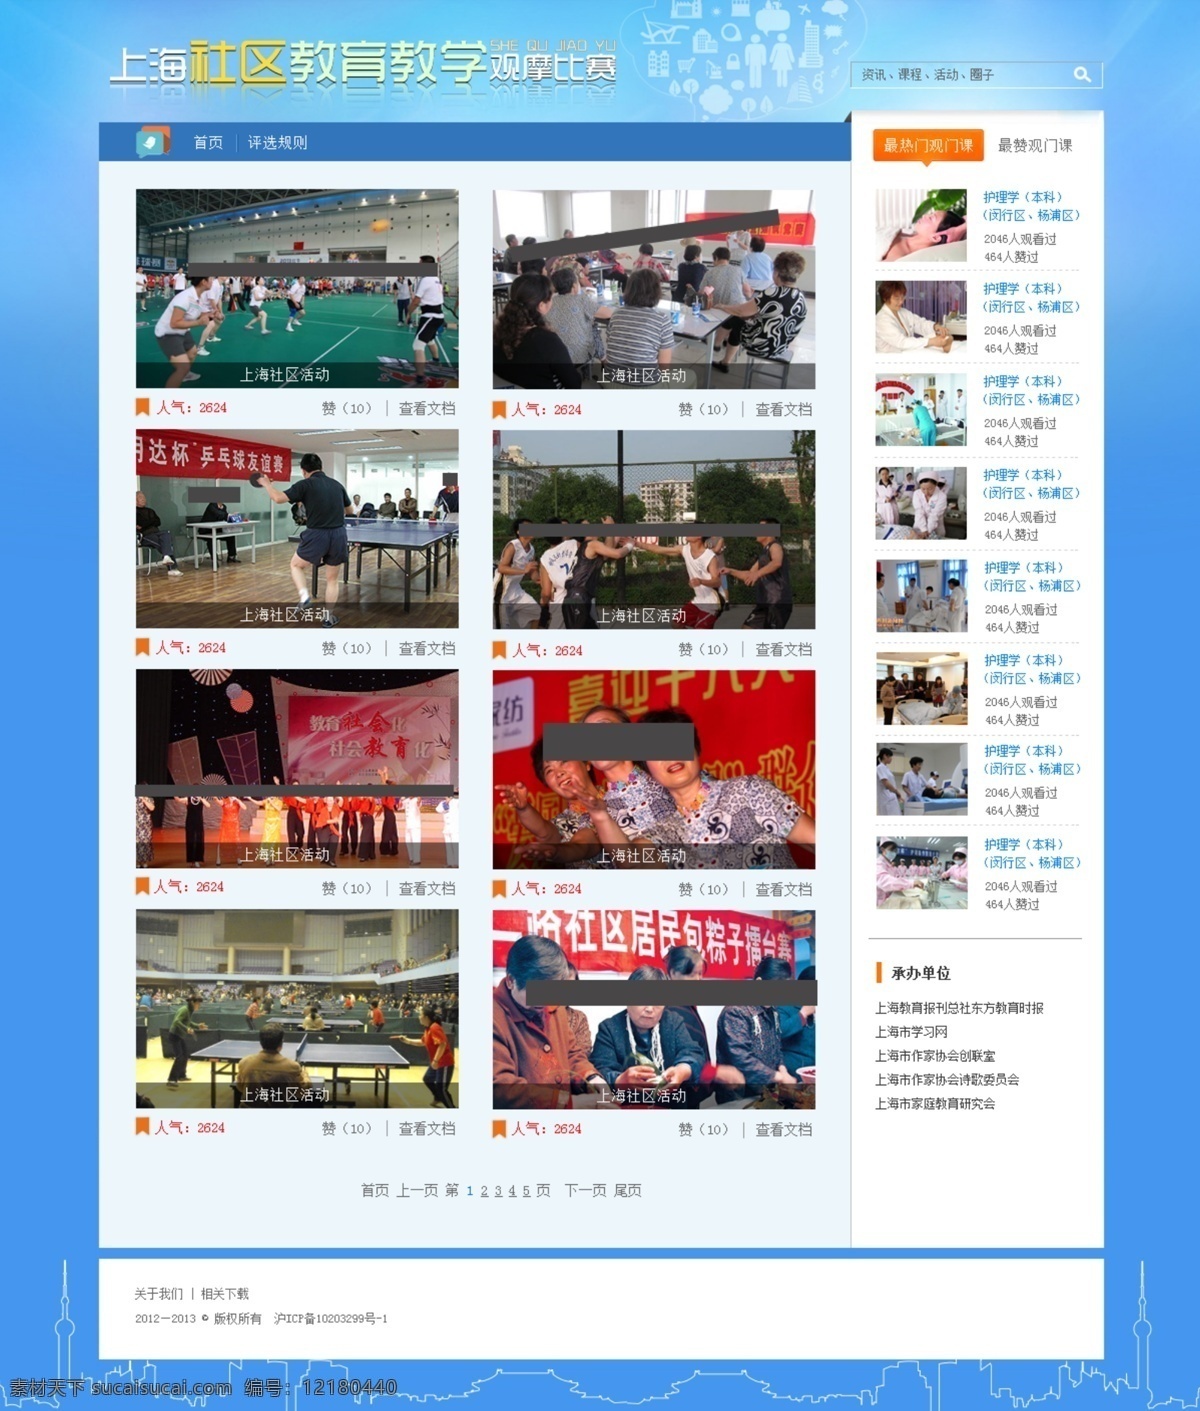 上海 社区 教育教学 观摩 比赛 网页设计 教育 教学 网页 人群 蓝色 创意 版式